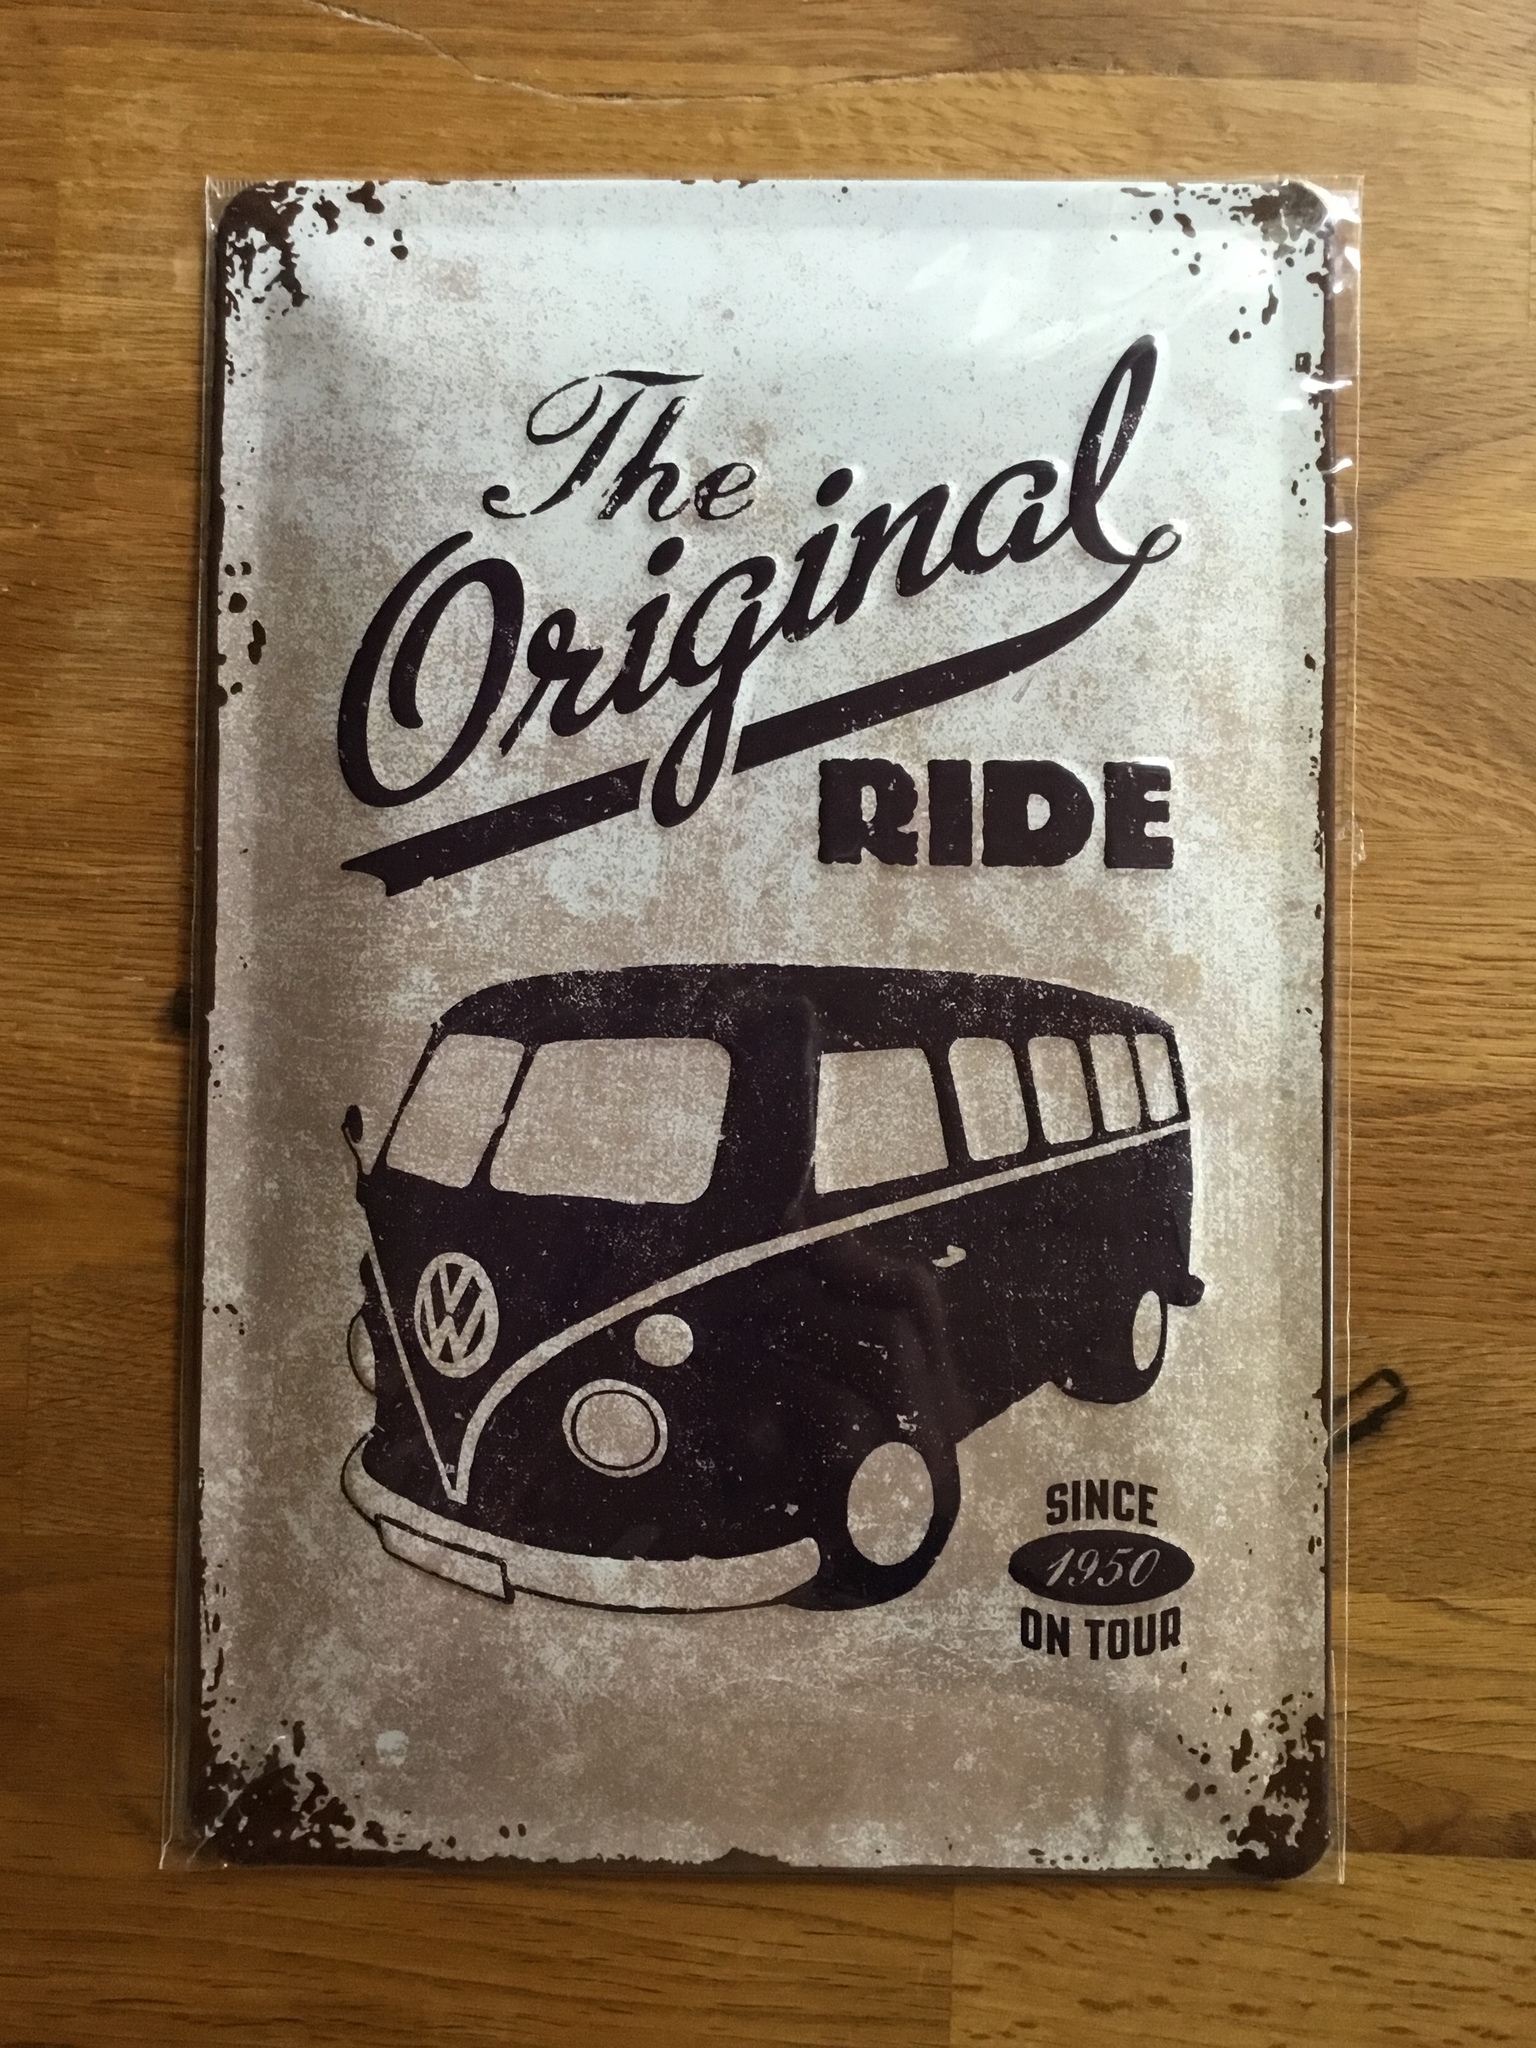 The original ride VW